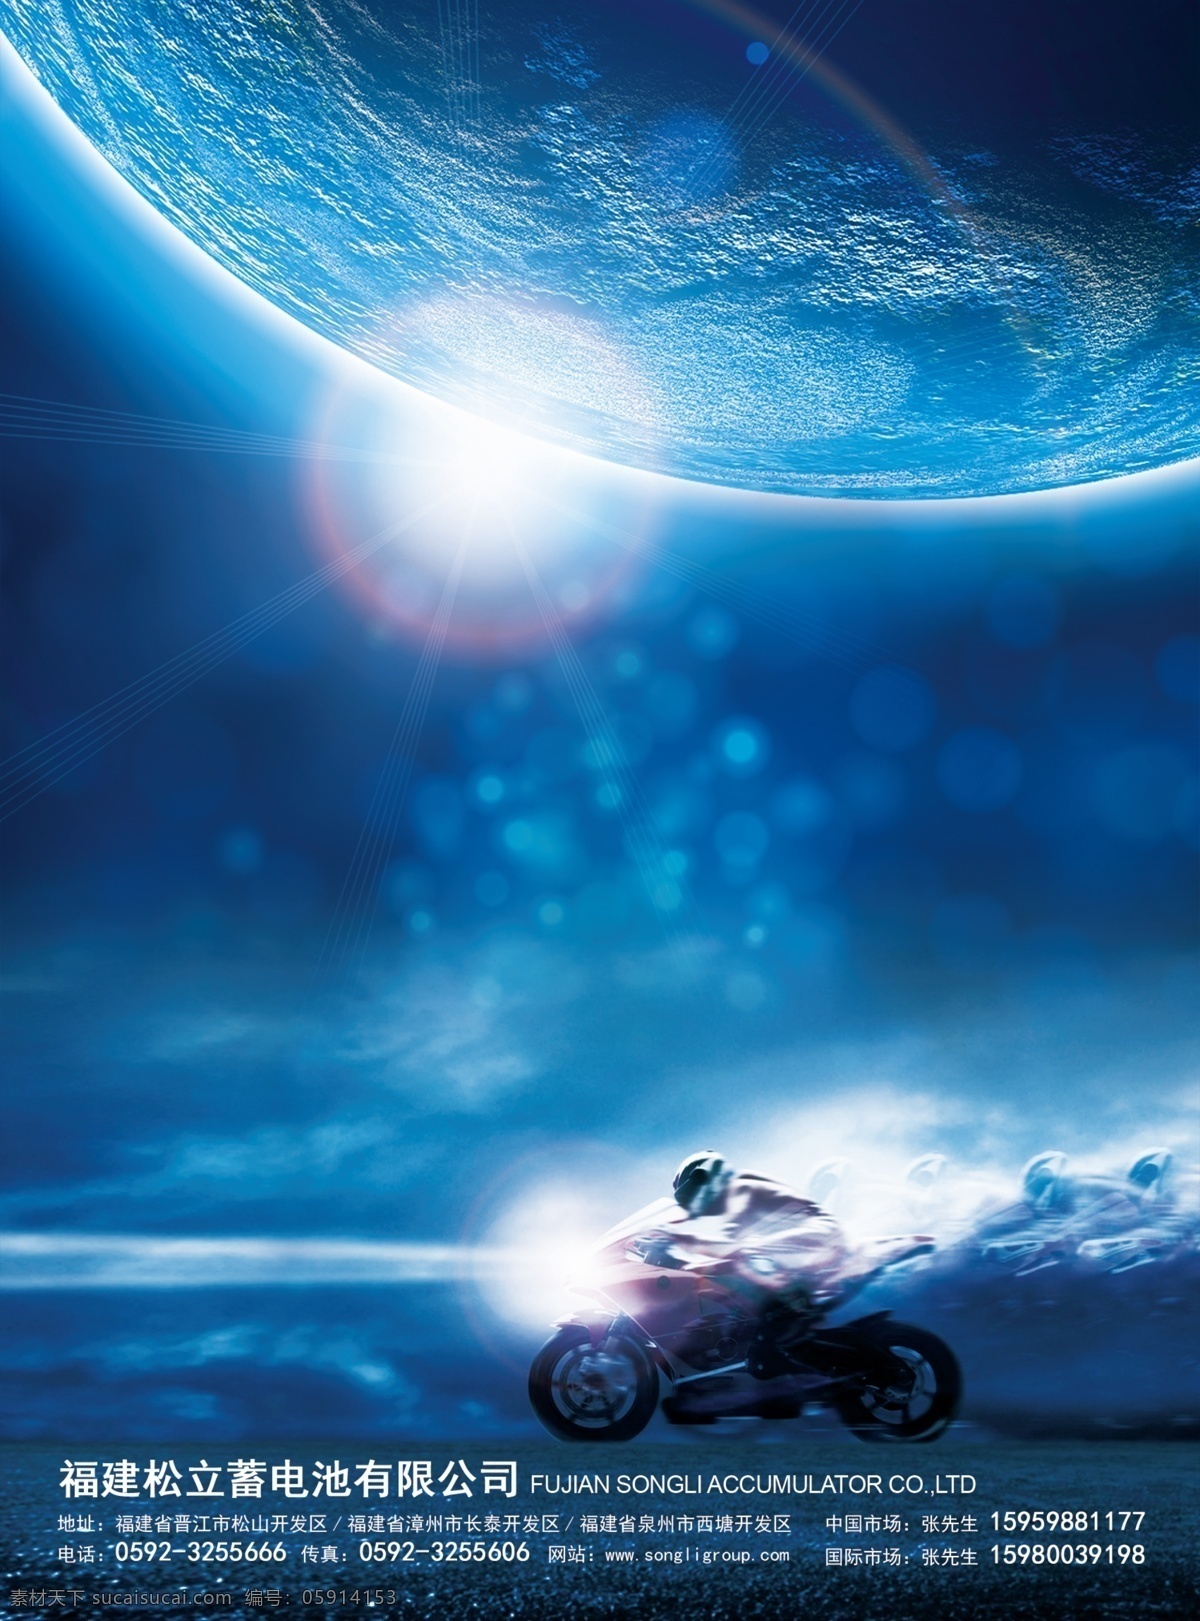 摩托车广告 科幻 地球 摩托车海报 广告 星空 画册 单页宣传页 雅马哈摩托车 山路 摩托车 广告设计模板